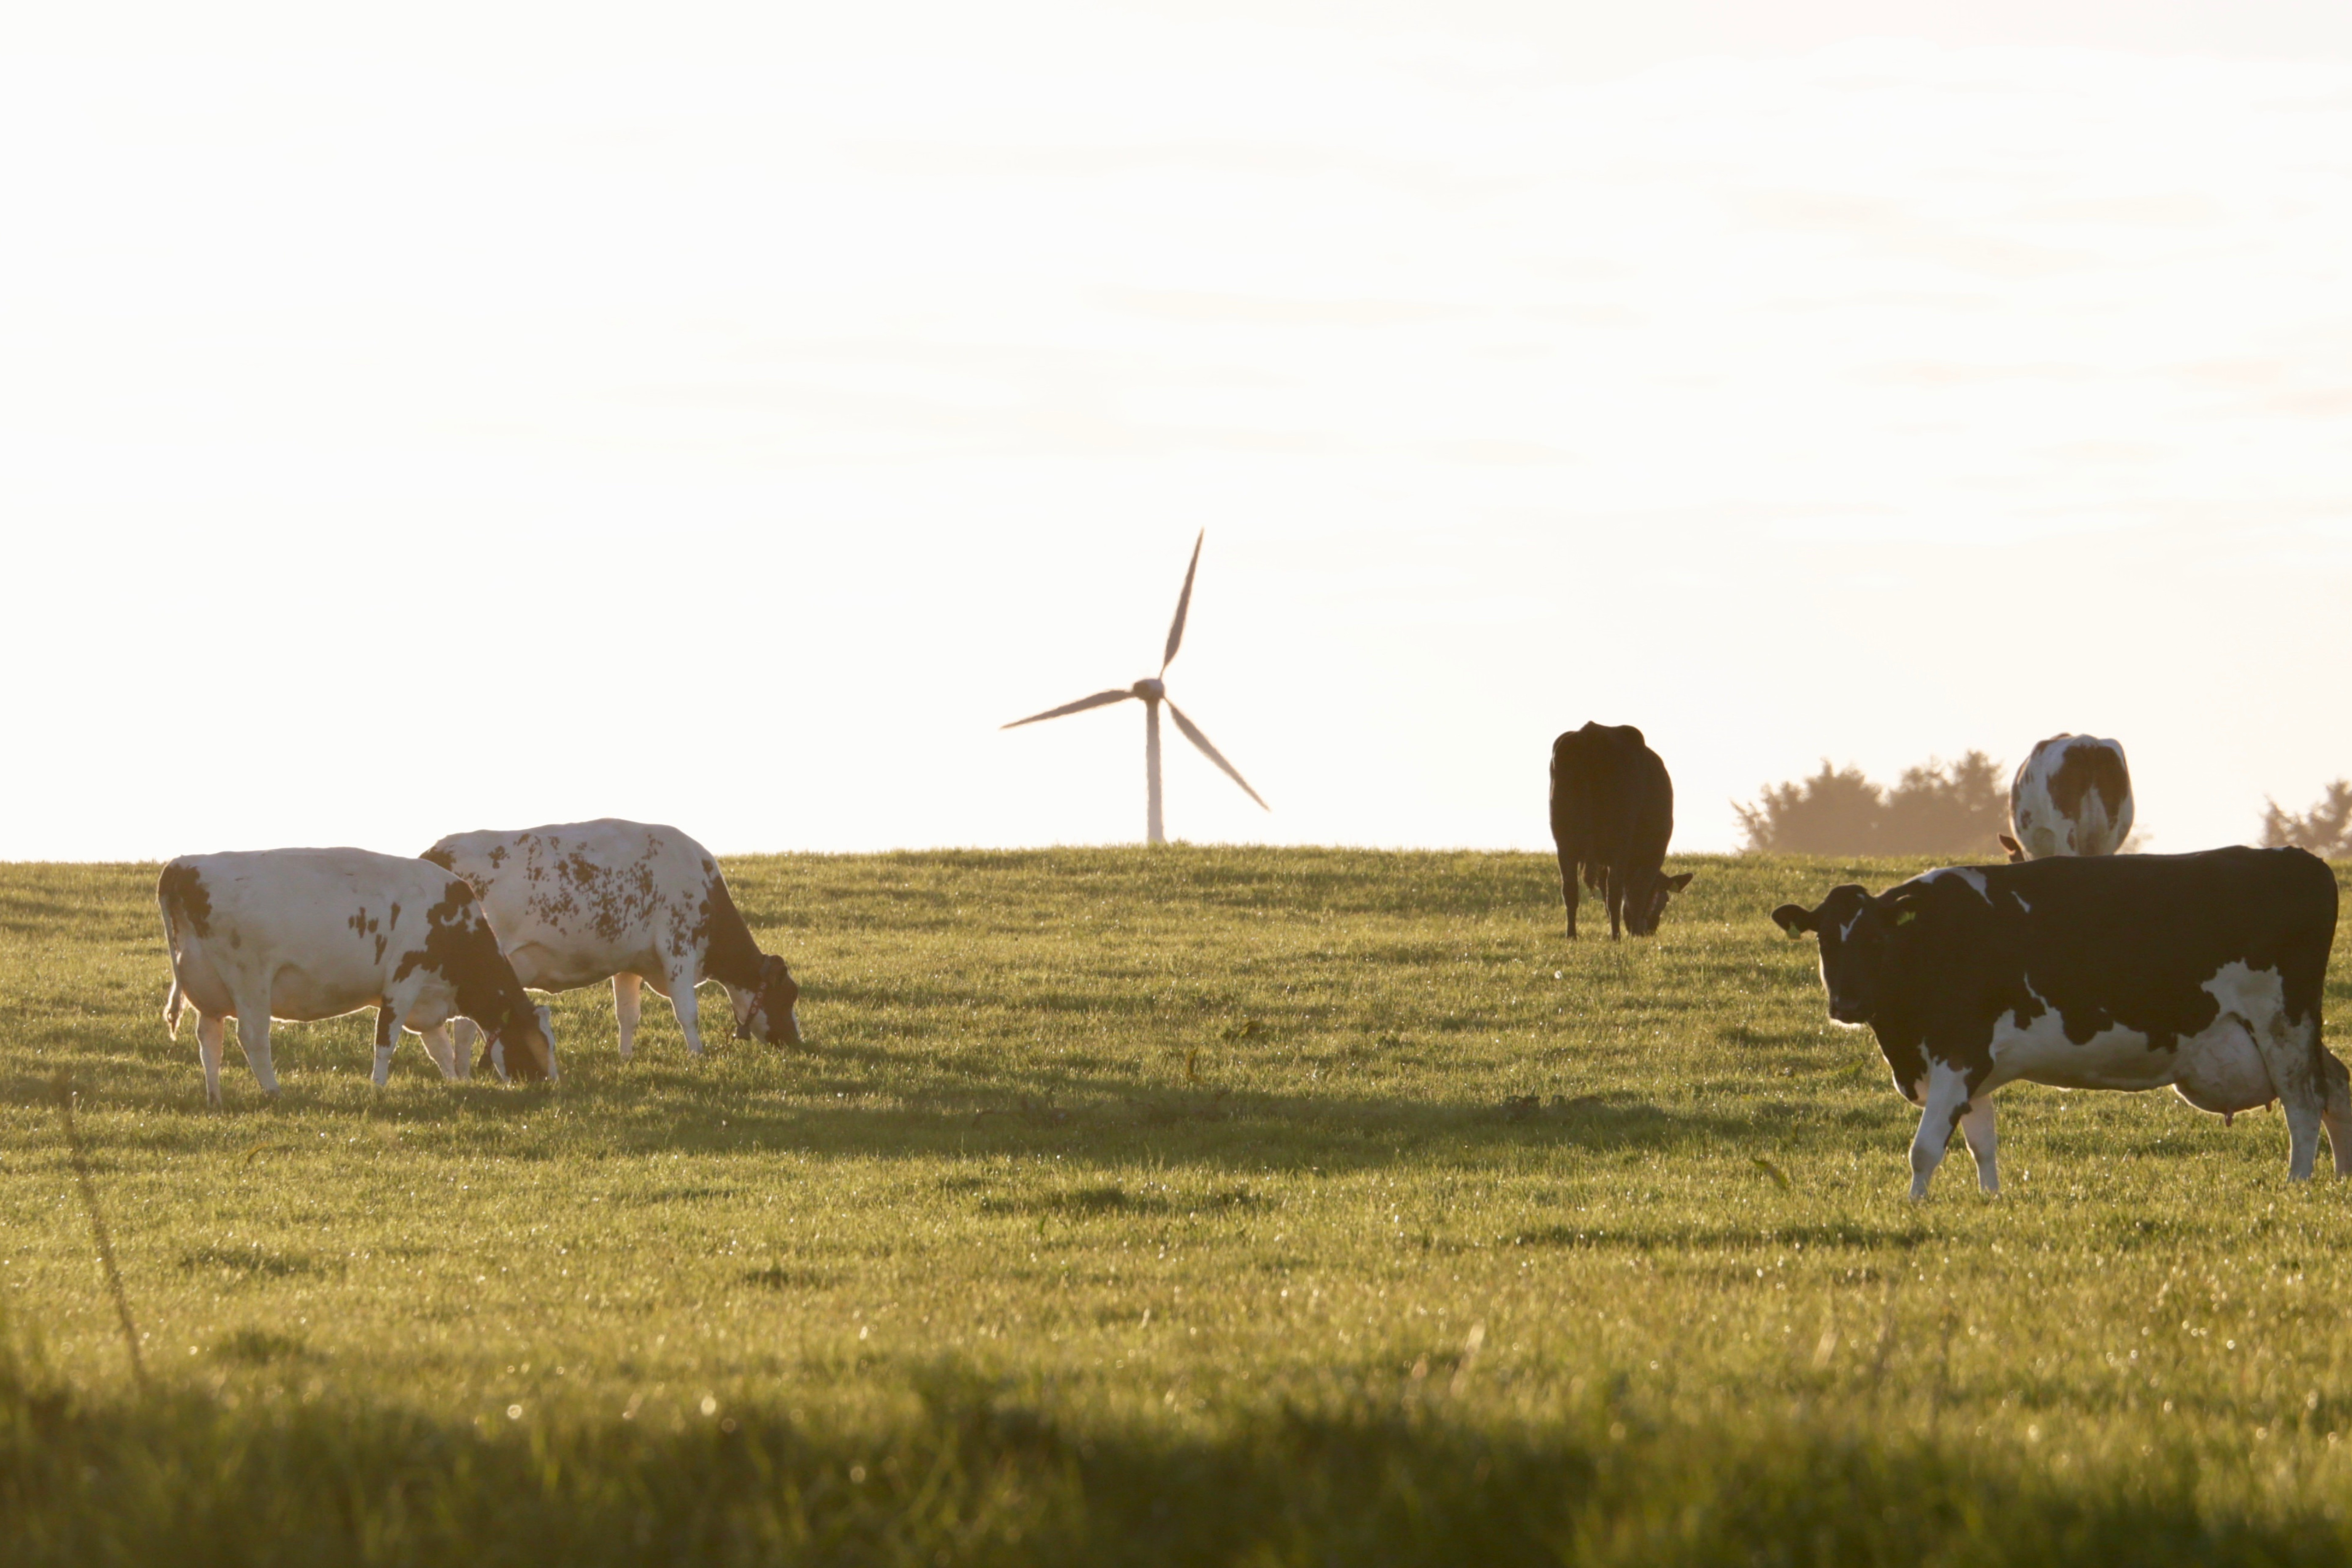 køer på græs med en vindmølle i baggrunden